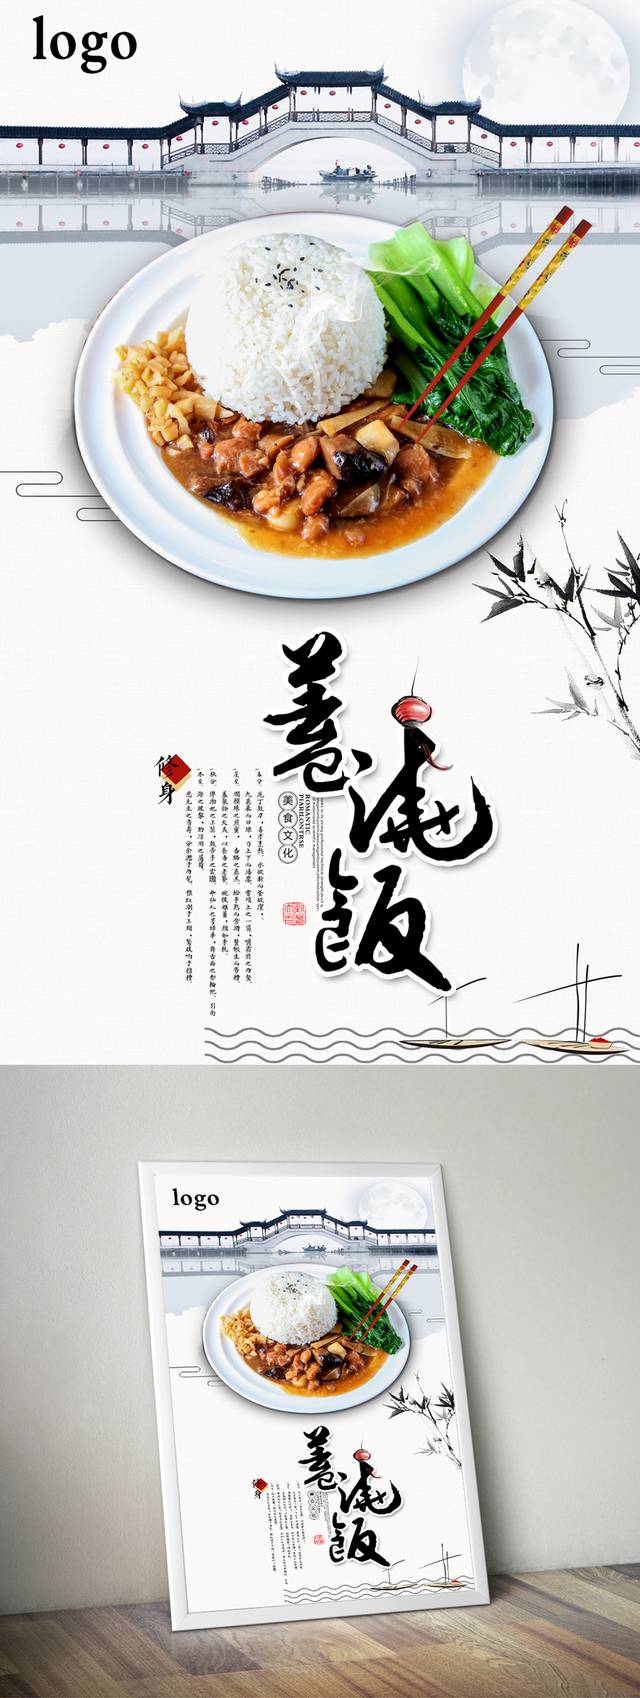 中国风盖浇饭宣传海报下载